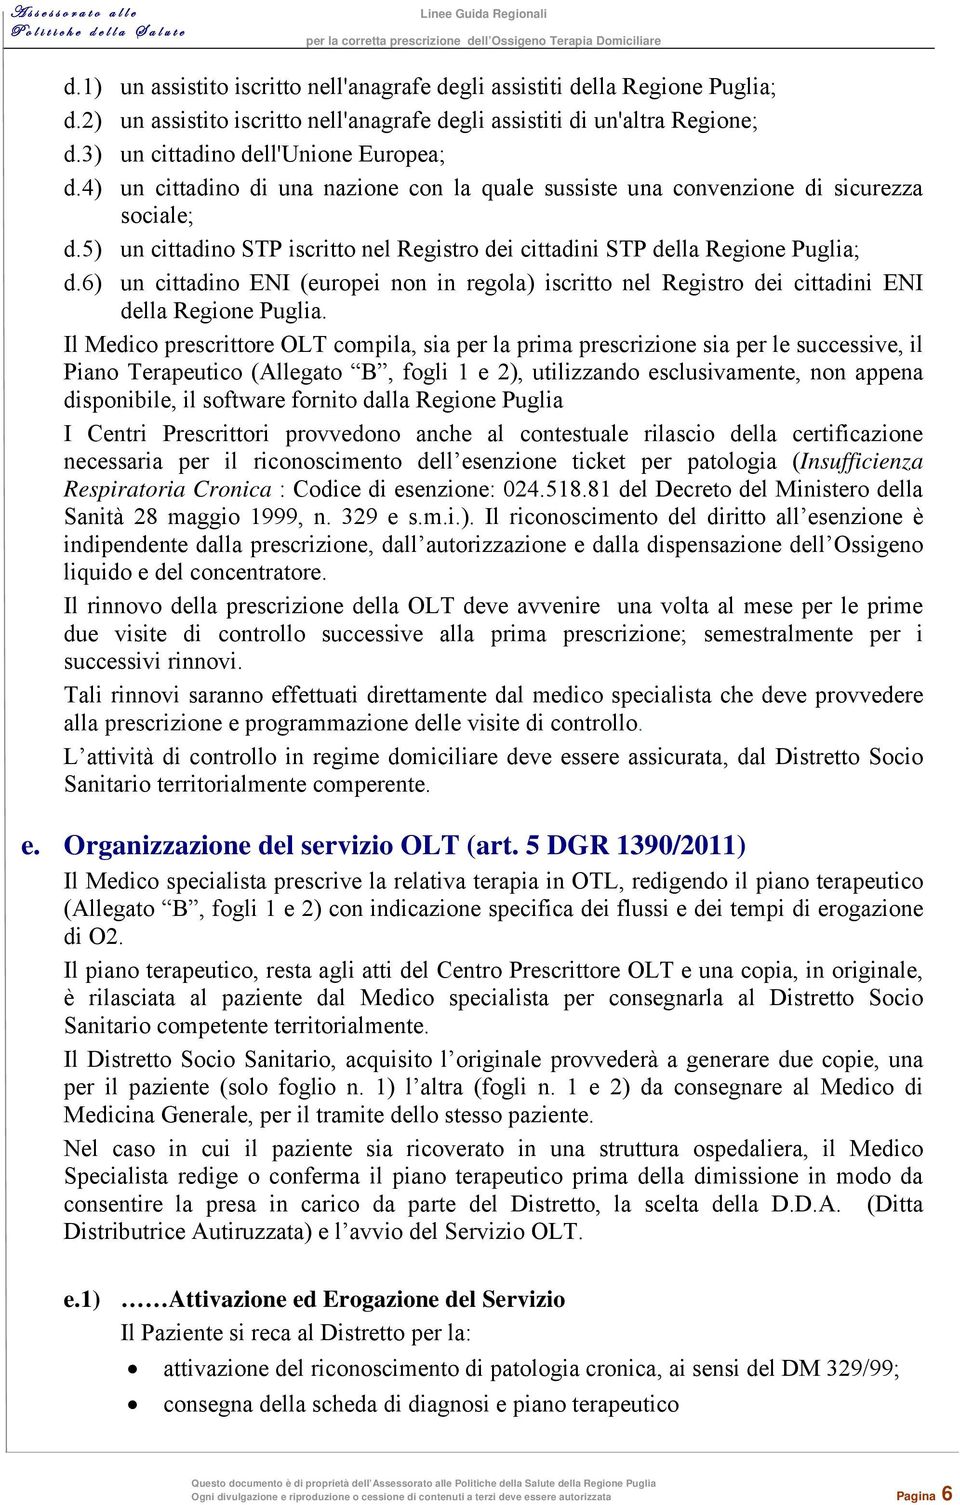 6) un cittadino ENI (europei non in regola) iscritto nel Registro dei cittadini ENI della Regione Puglia.